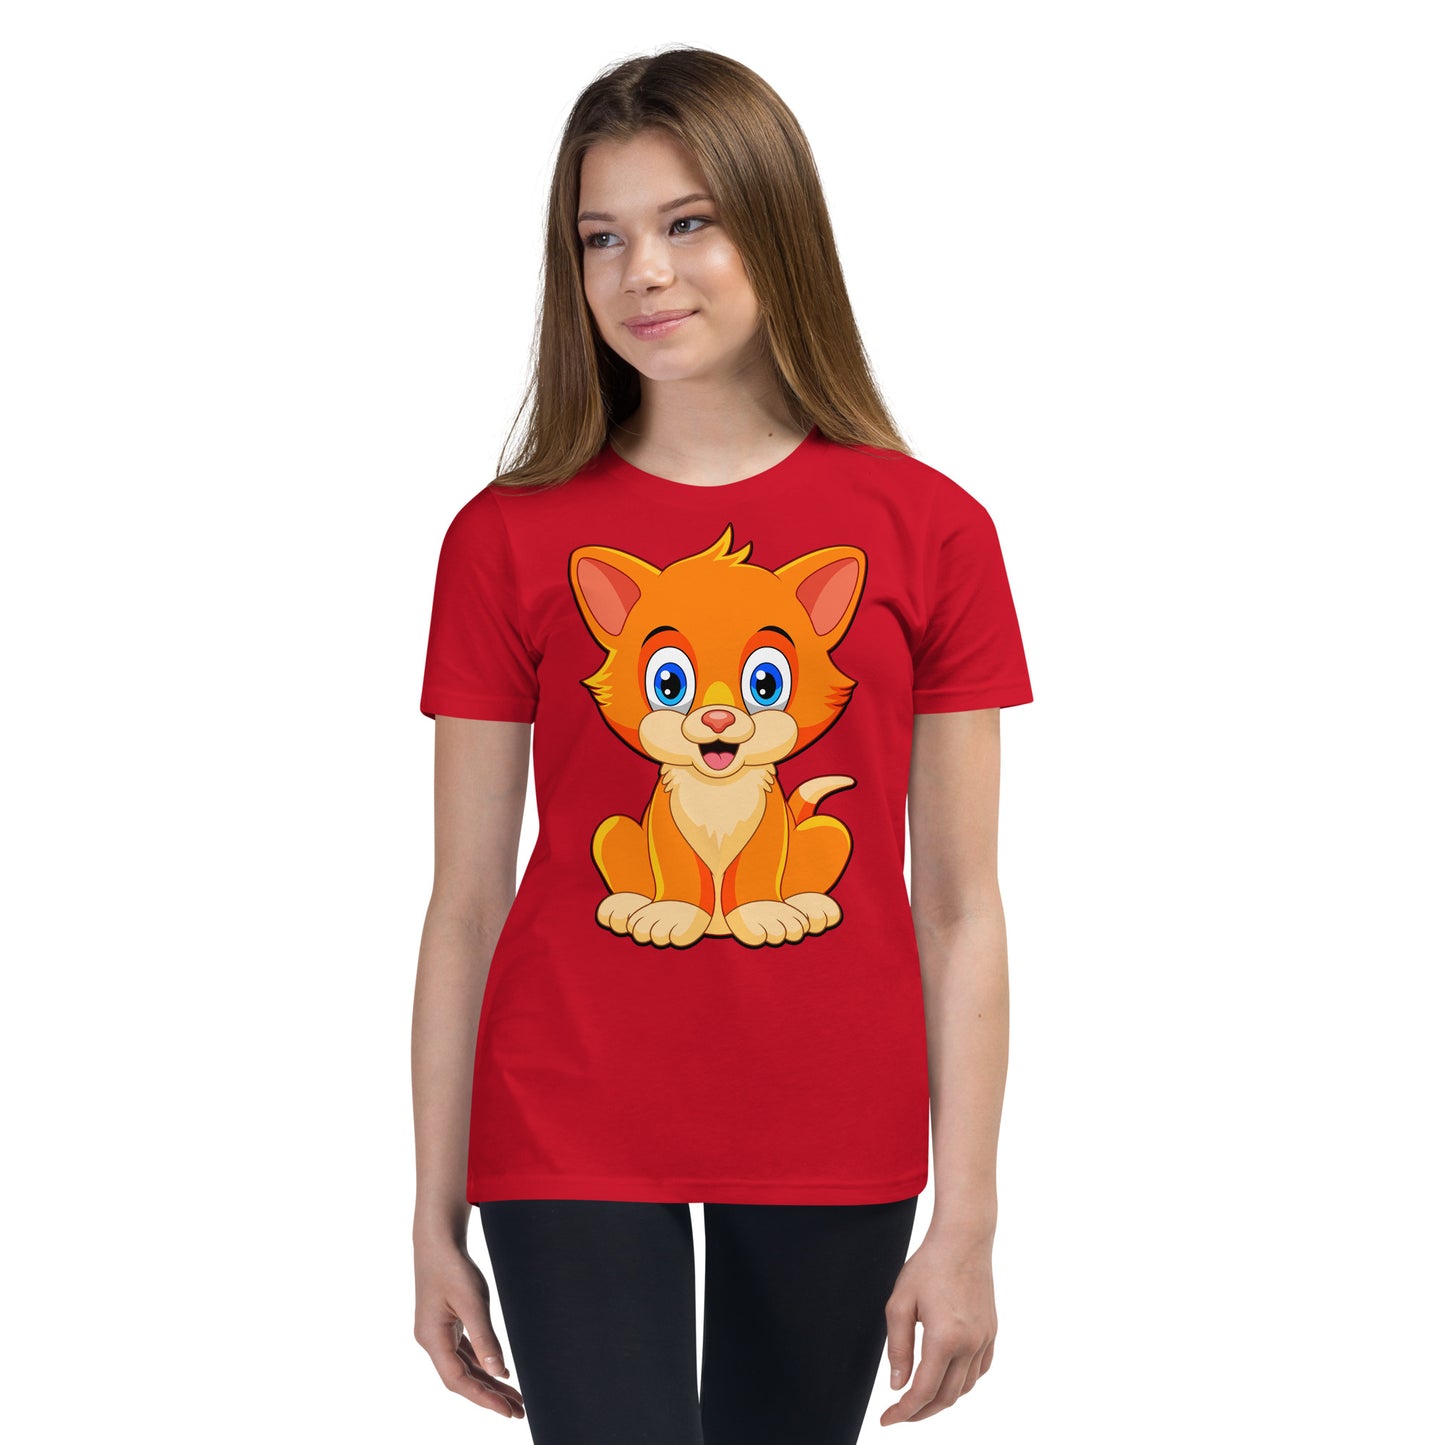 Cute Baby Cat T-shirt, No. 0145